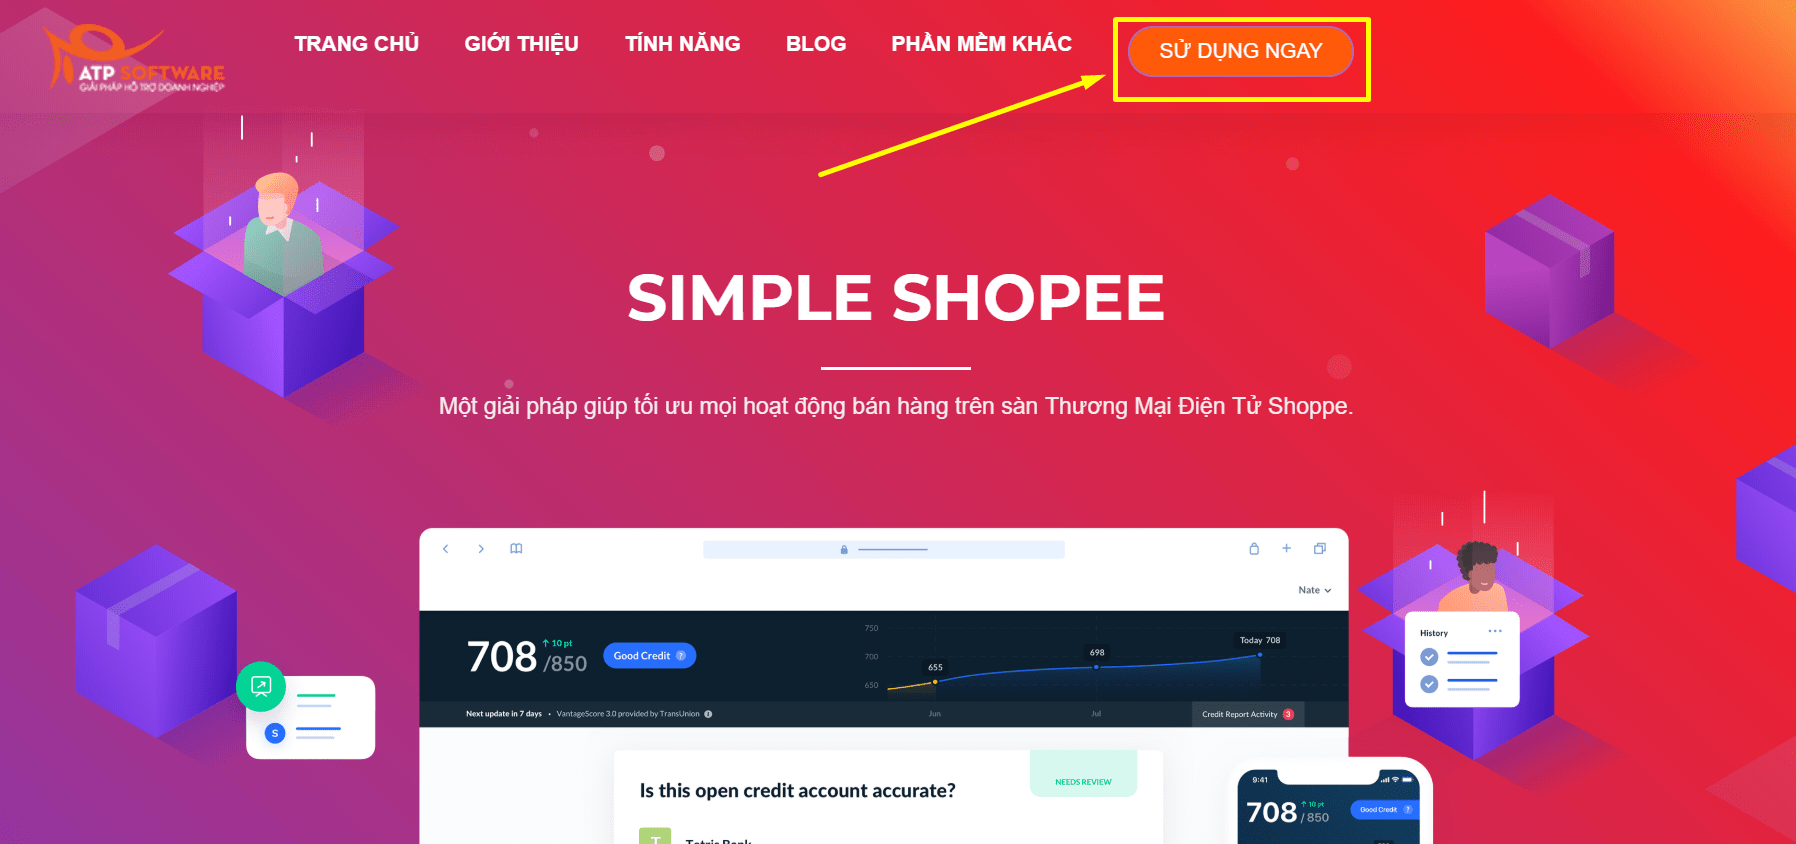 Cách khai thác phần mềm Simple Shopee - Giải pháp tối ưu bán hàng trên Shopee | ATP Software